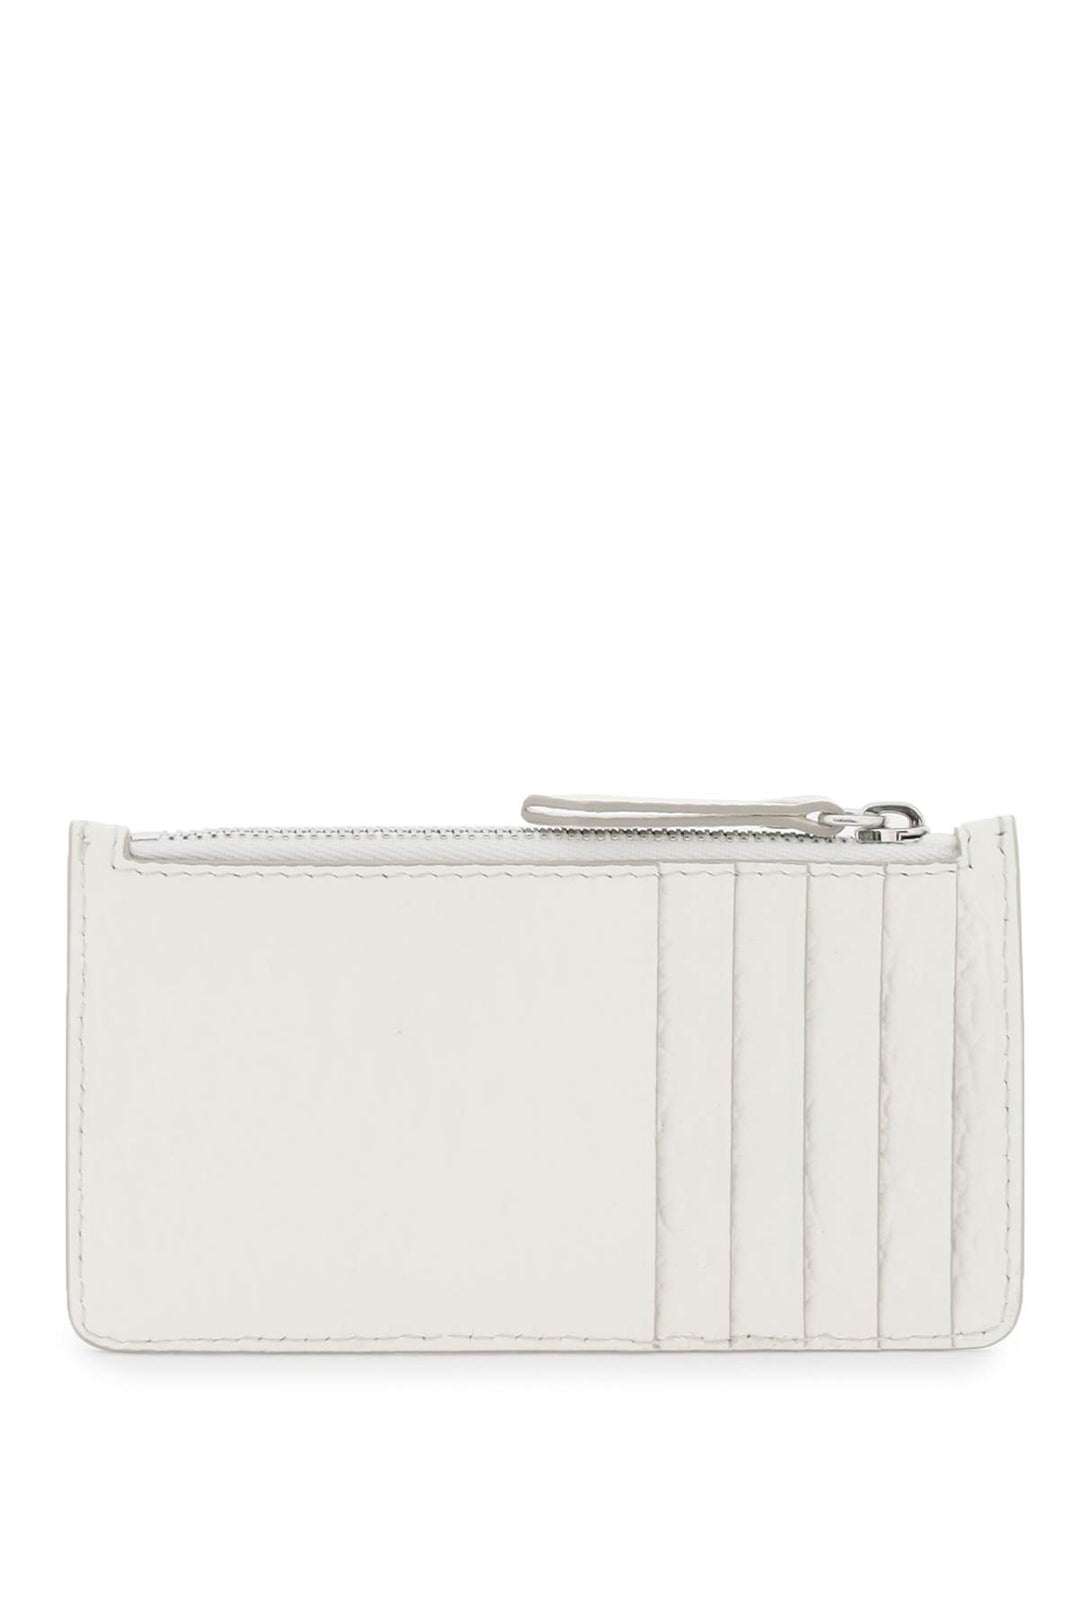 Maison Margiela Leather Zipped Cardholder   Bianco